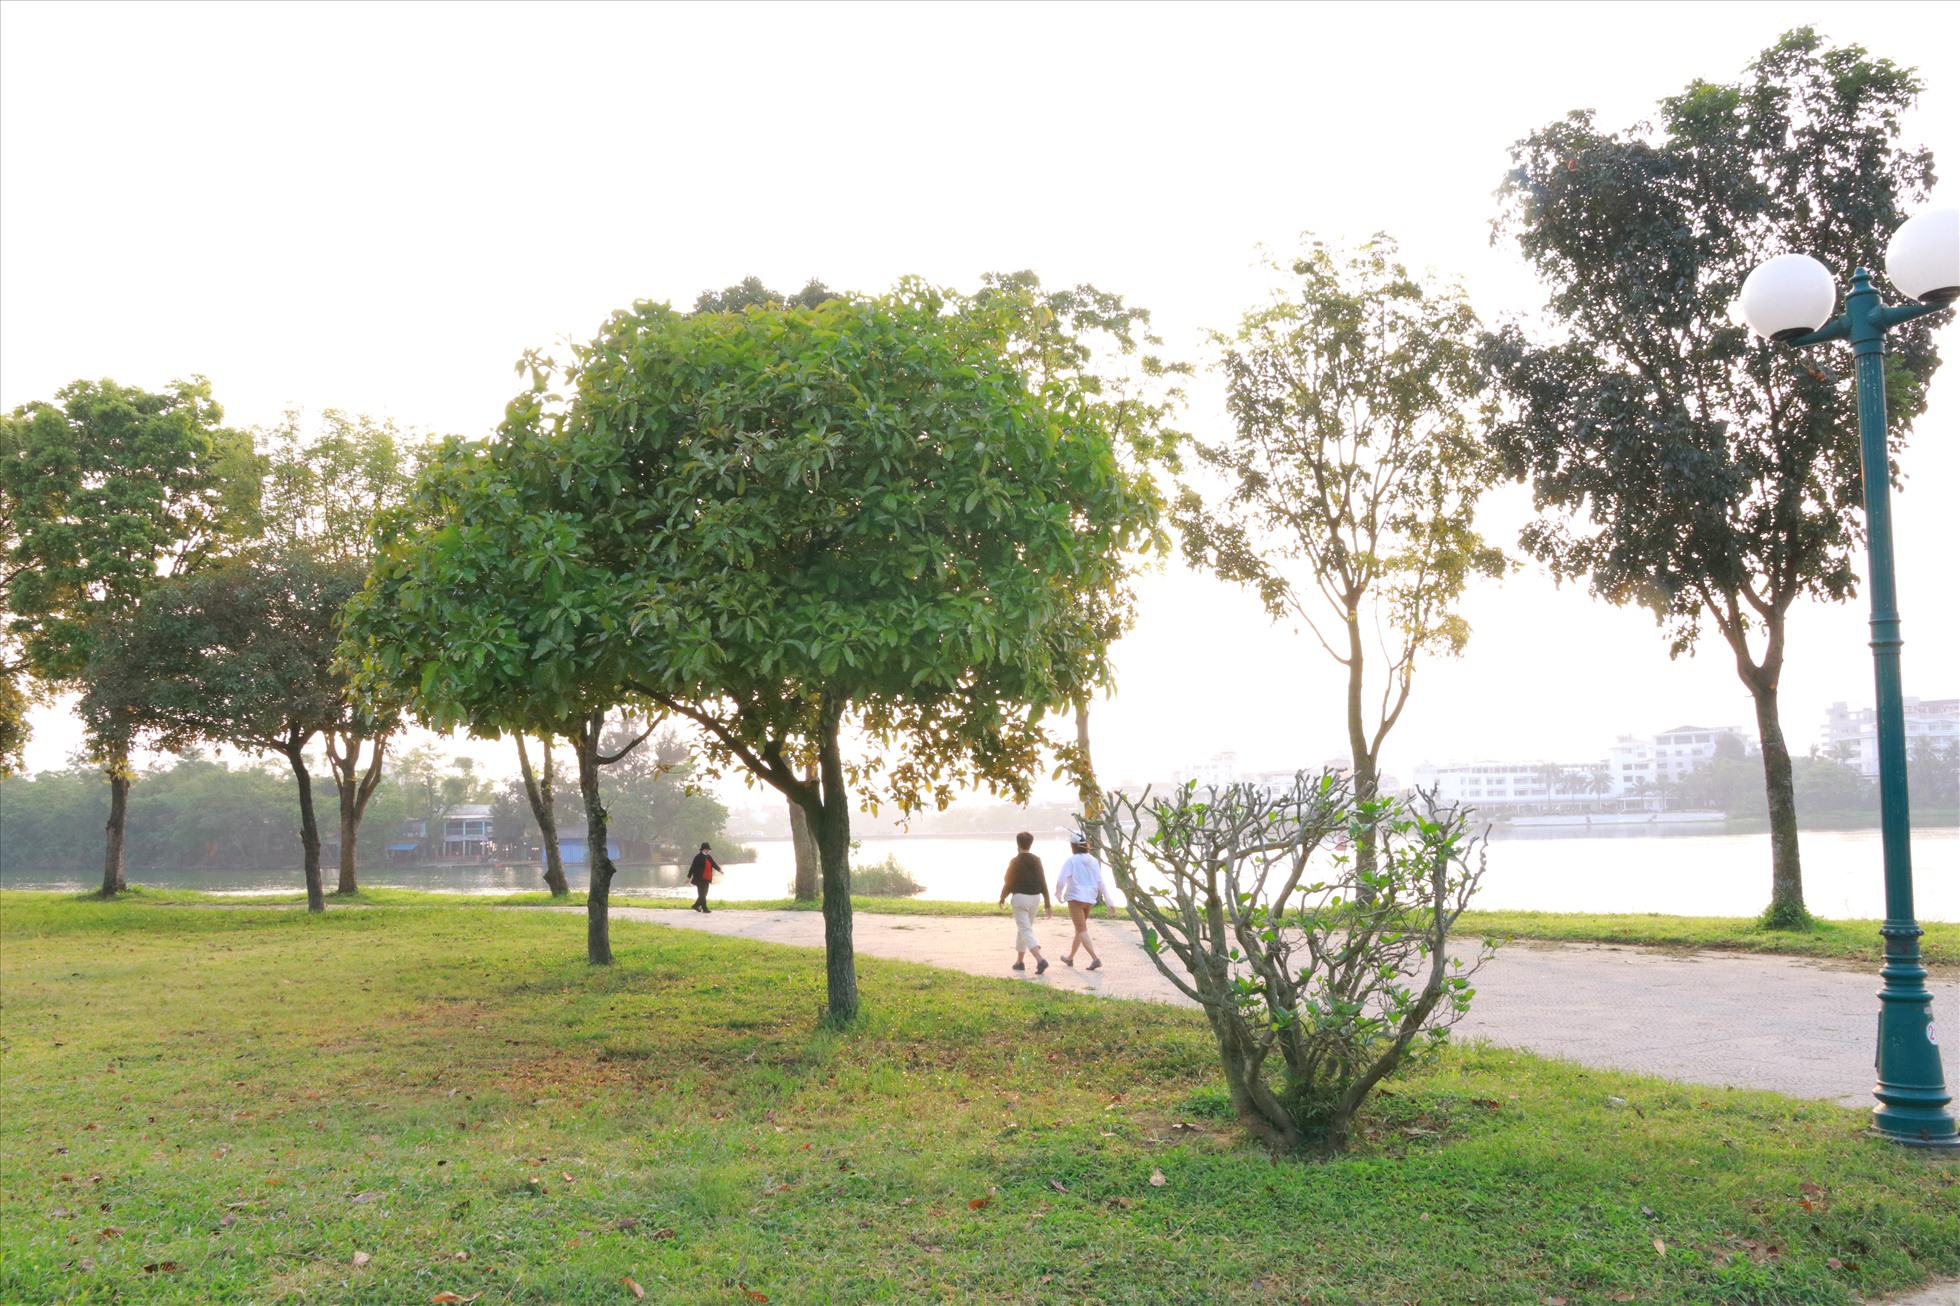 Công viên Trịnh Công Sơn có diện tích khoảng 6,2ha kéo dài gần 1km dọc theo hạ nguồn sông Hương, với tổng thể công viên được cấu trúc bởi 2 phần: Không gian Nối vòng tay lớn (20.000m2) và không gian Vườn âm nhạc (42.000m2).